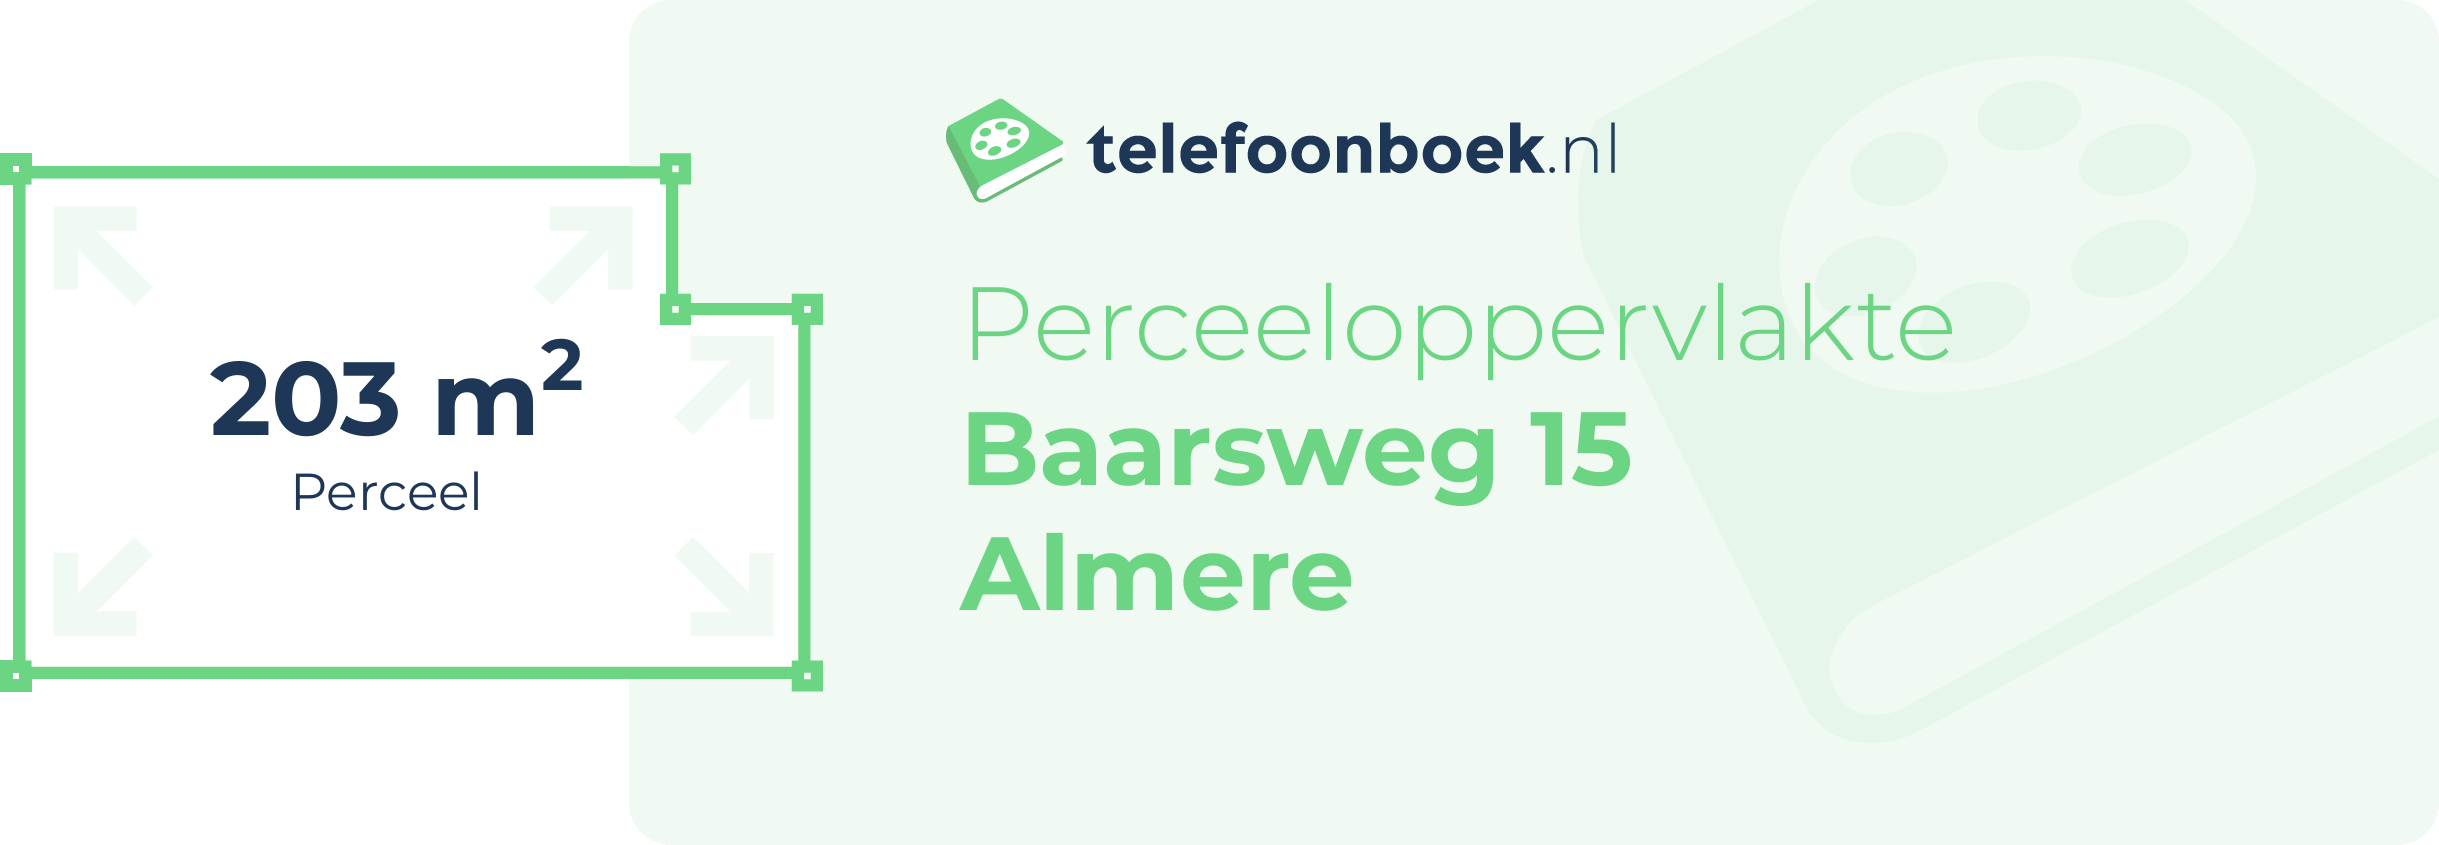 Perceeloppervlakte Baarsweg 15 Almere